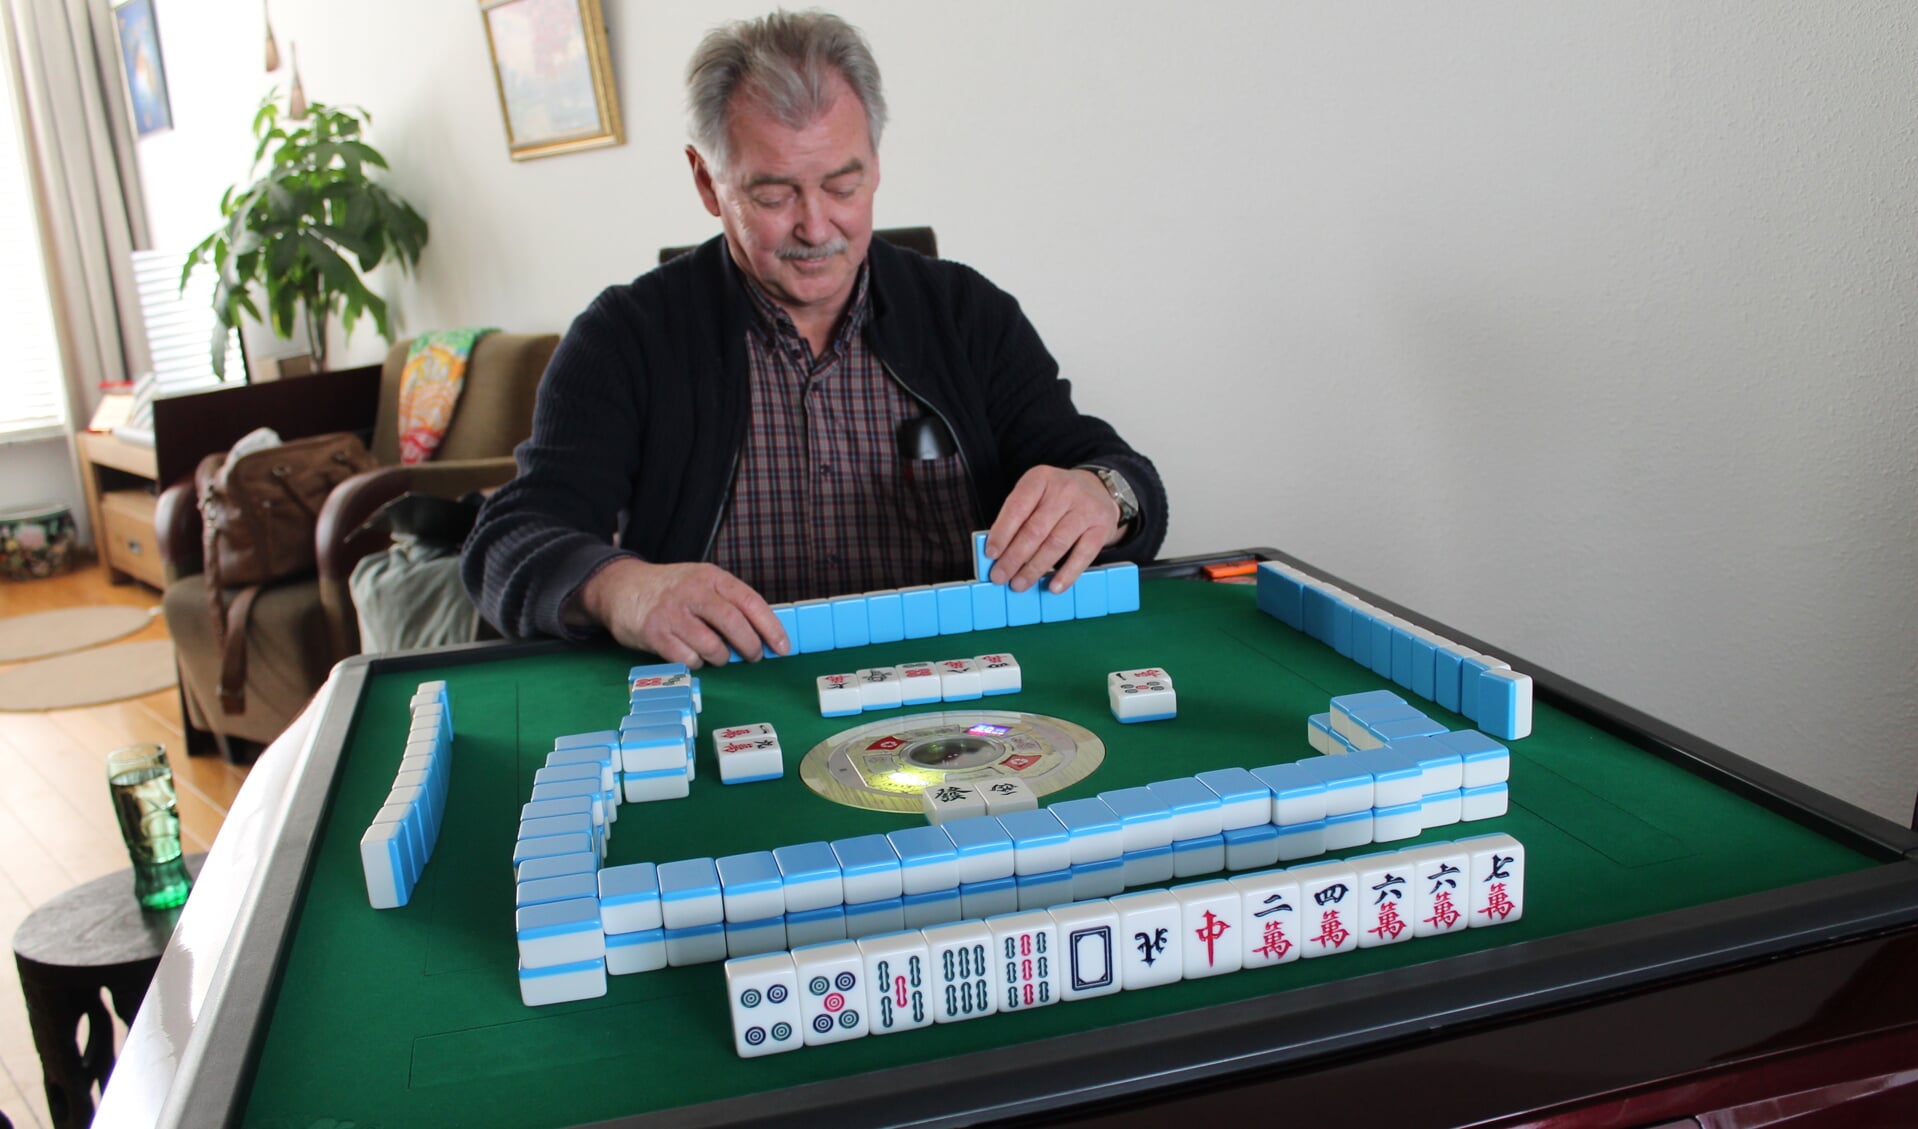 Mahjong Spelletjes spelen op Elkspel, gratis voor iedereen!